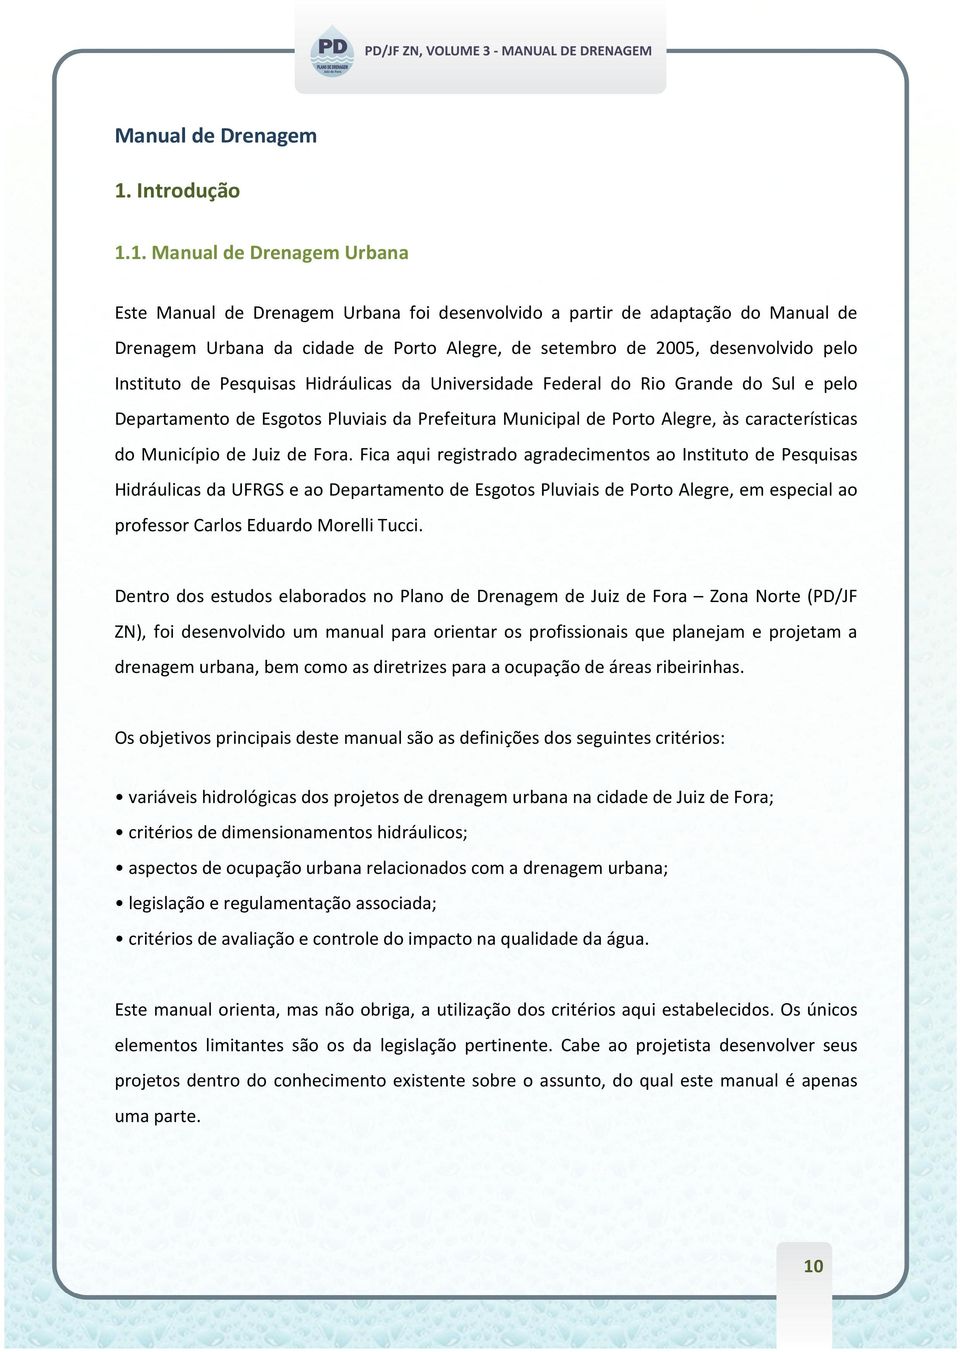 1. Manual de Drenagem Urbana Este Manual de Drenagem Urbana foi desenvolvido a partir de adaptação do Manual de Drenagem Urbana da cidade de Porto Alegre, de setembro de 2005, desenvolvido pelo